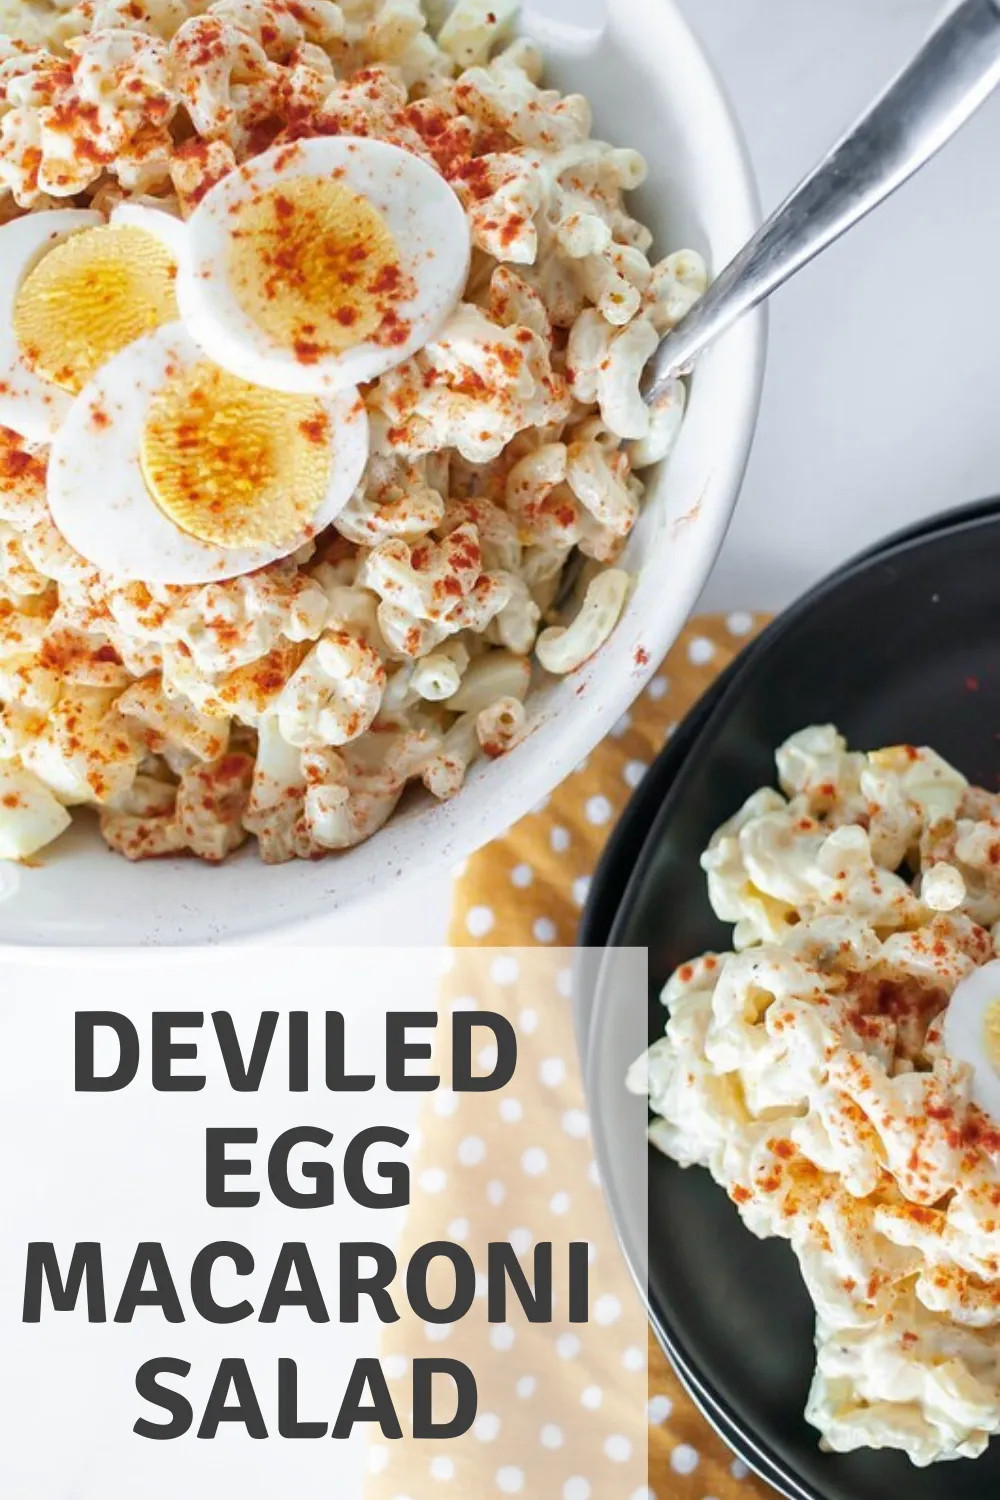 Macaroni Salad With Egg And Cheese
 Deviled Egg Macaroni Salad